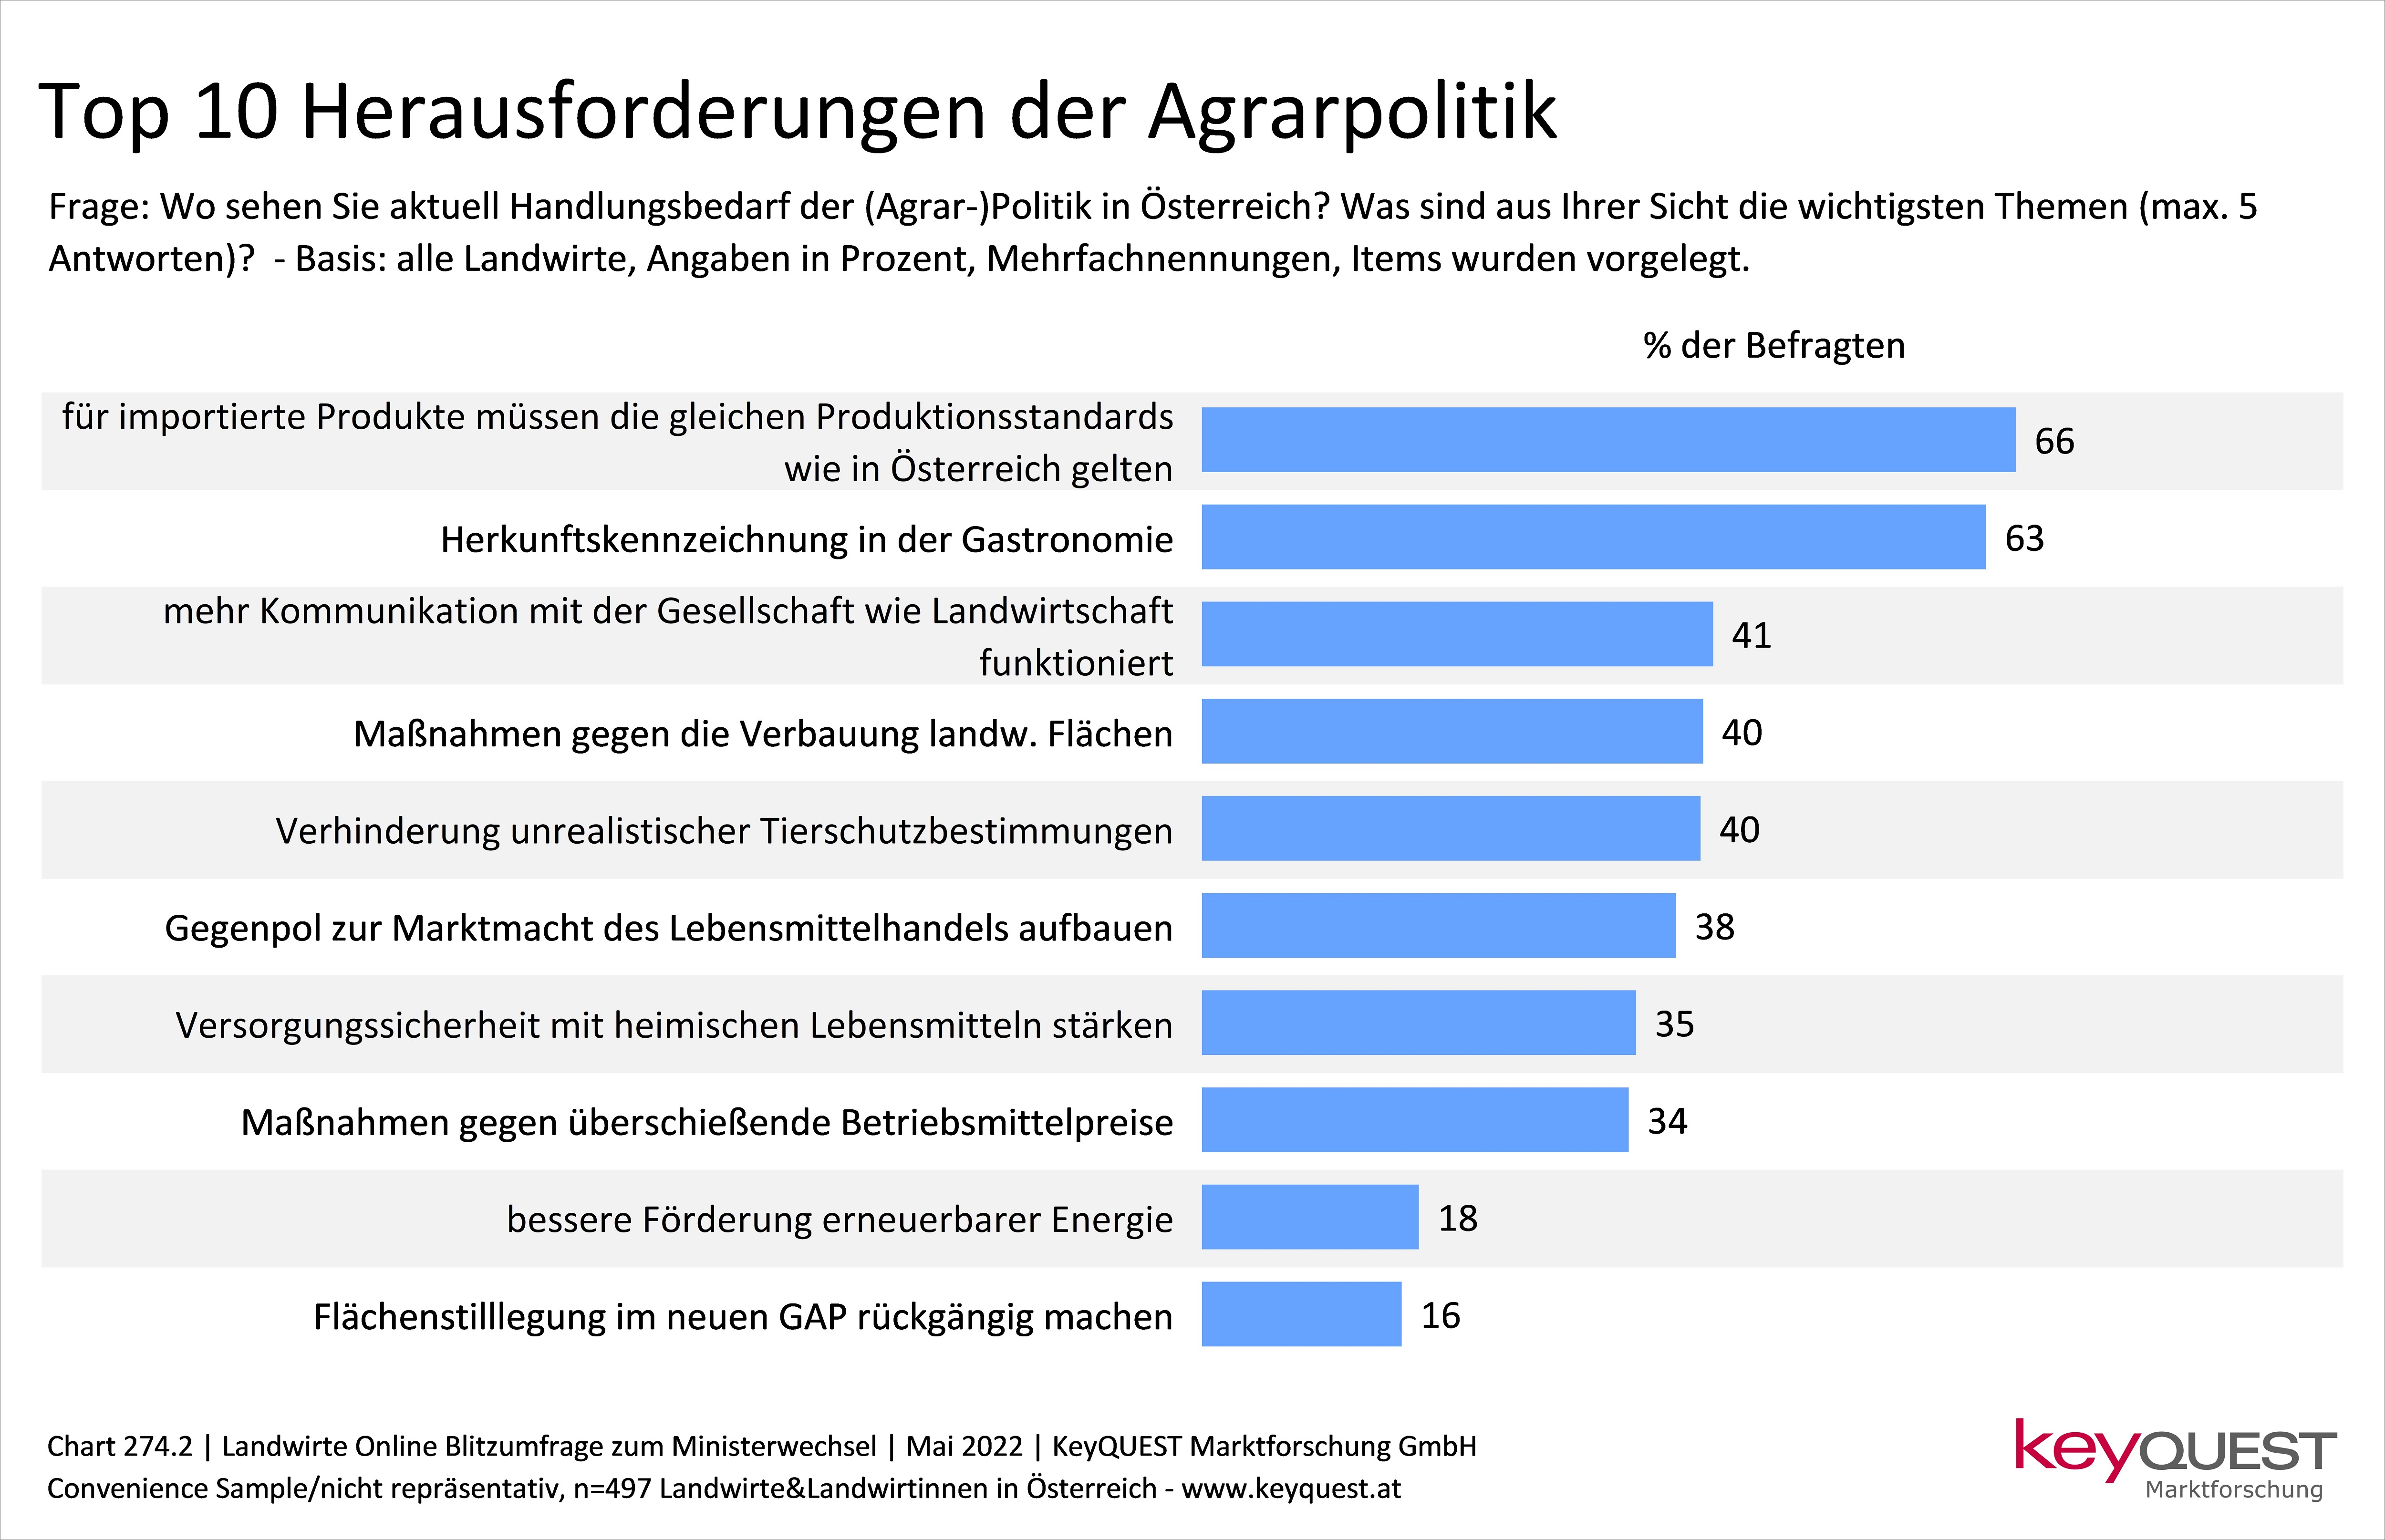 Ranking der wichtigsten Aufgaben bzw. Themen für die Agrarpolitik in Österreich